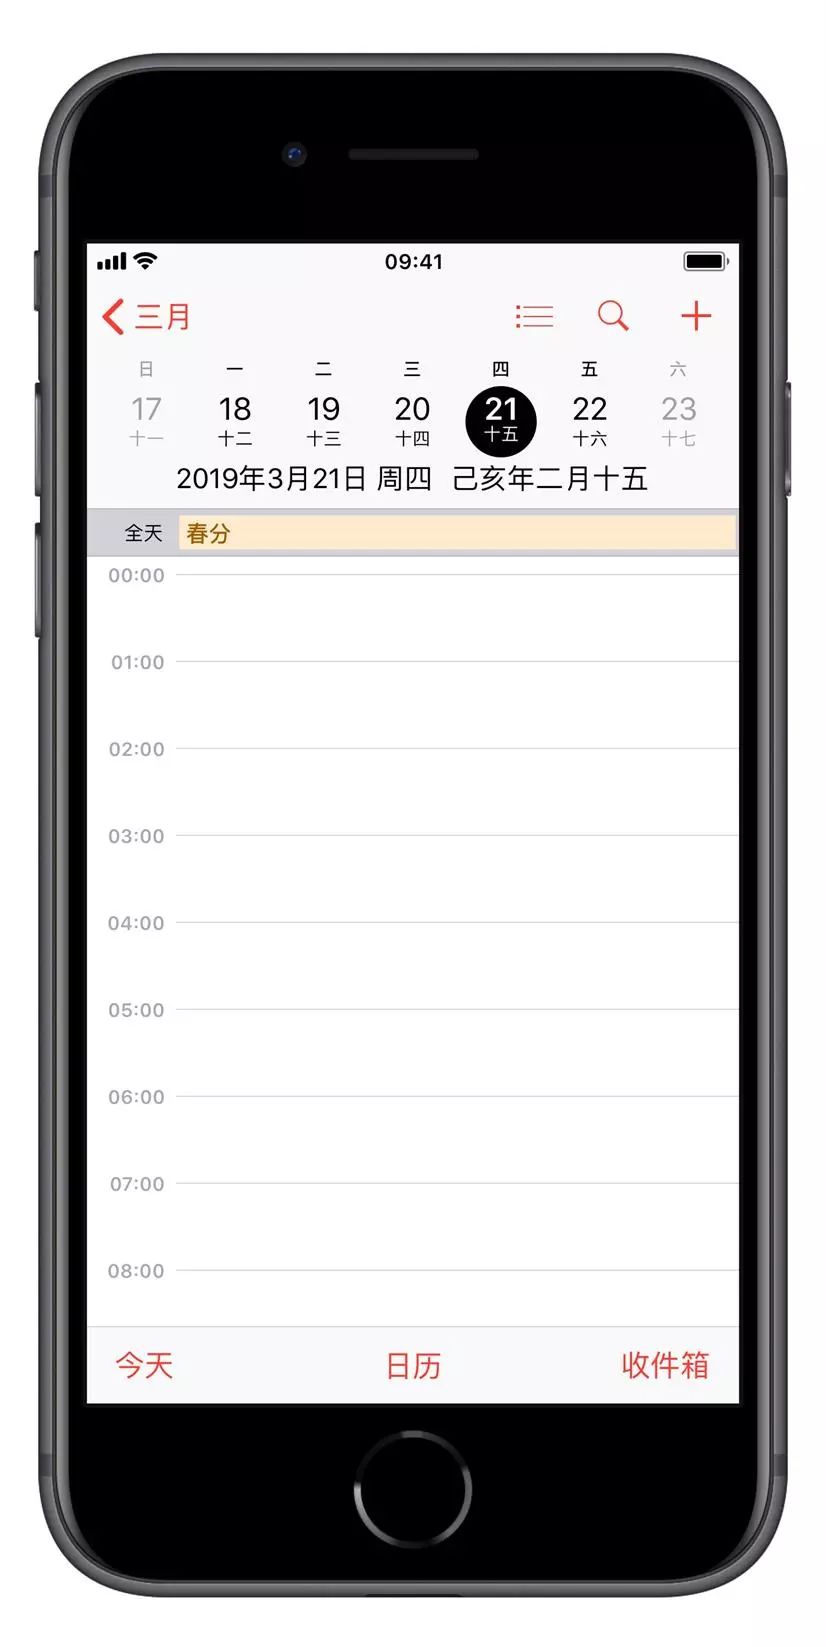 更新 iOS 12 后,日历无法显示中国节假日该